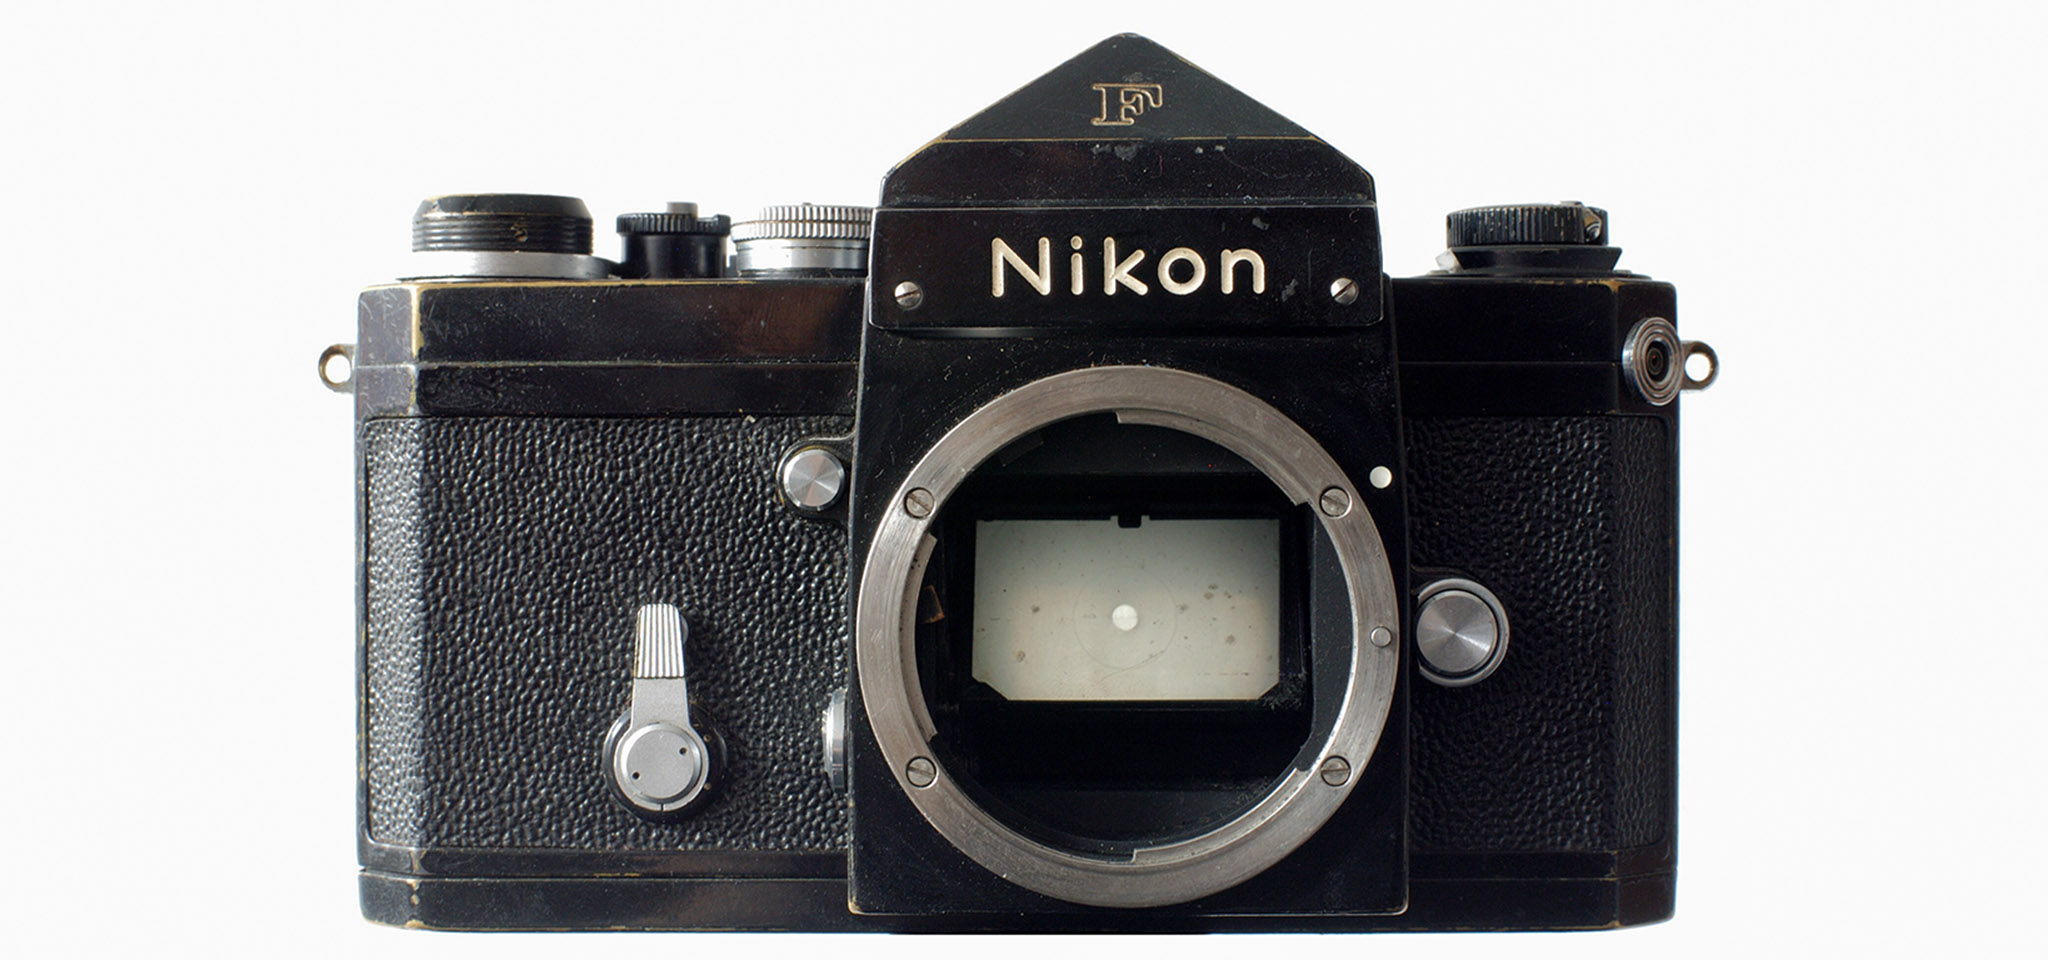 Nikon Nhật Bản mở dịch vụ sửa chửa máy ảnh phim và các ống kính cũ, hạn chót nhận máy tháng 3/2018